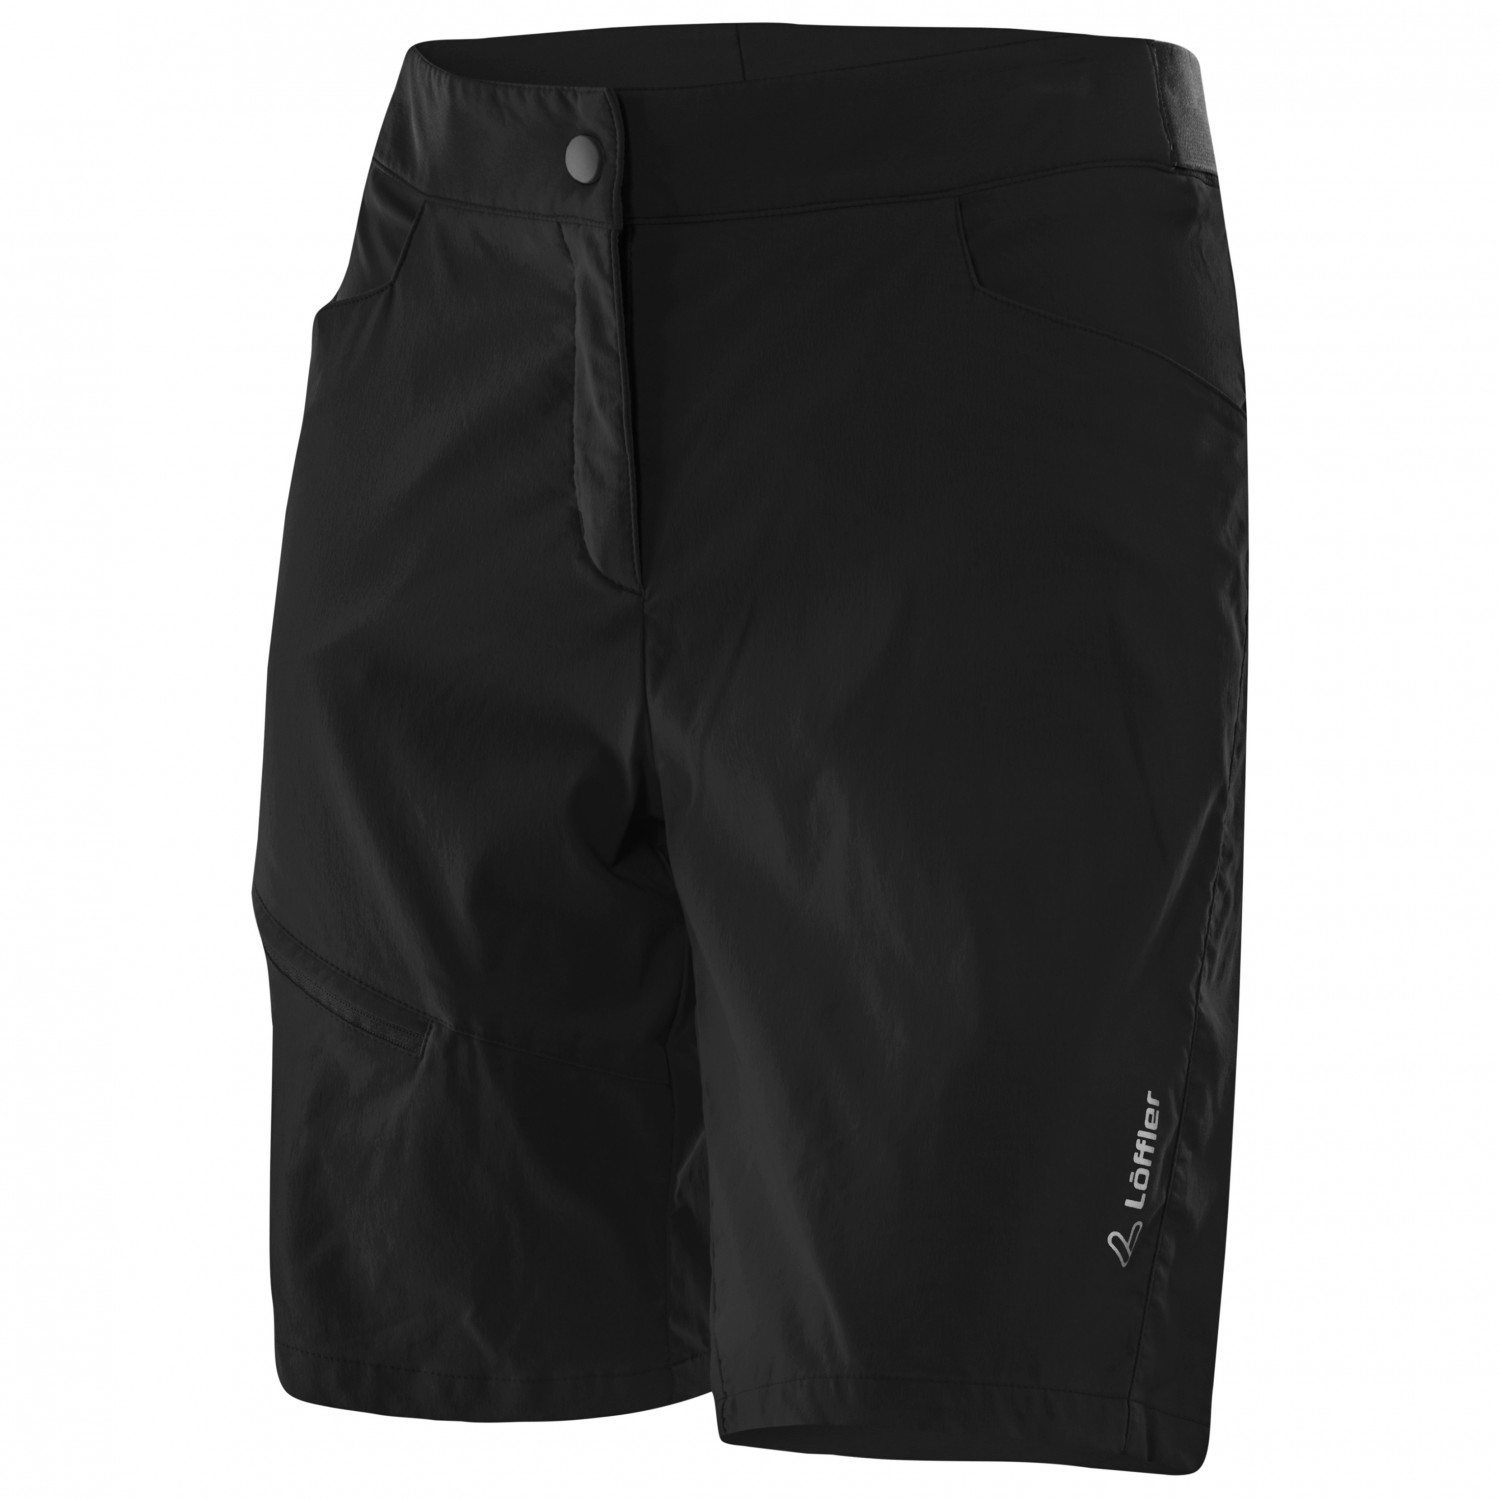 Велосипедные шорты Löffler Women's Bike Shorts Comfort Comfort Stretch Light, черный шорты fila dynamic bike shorts